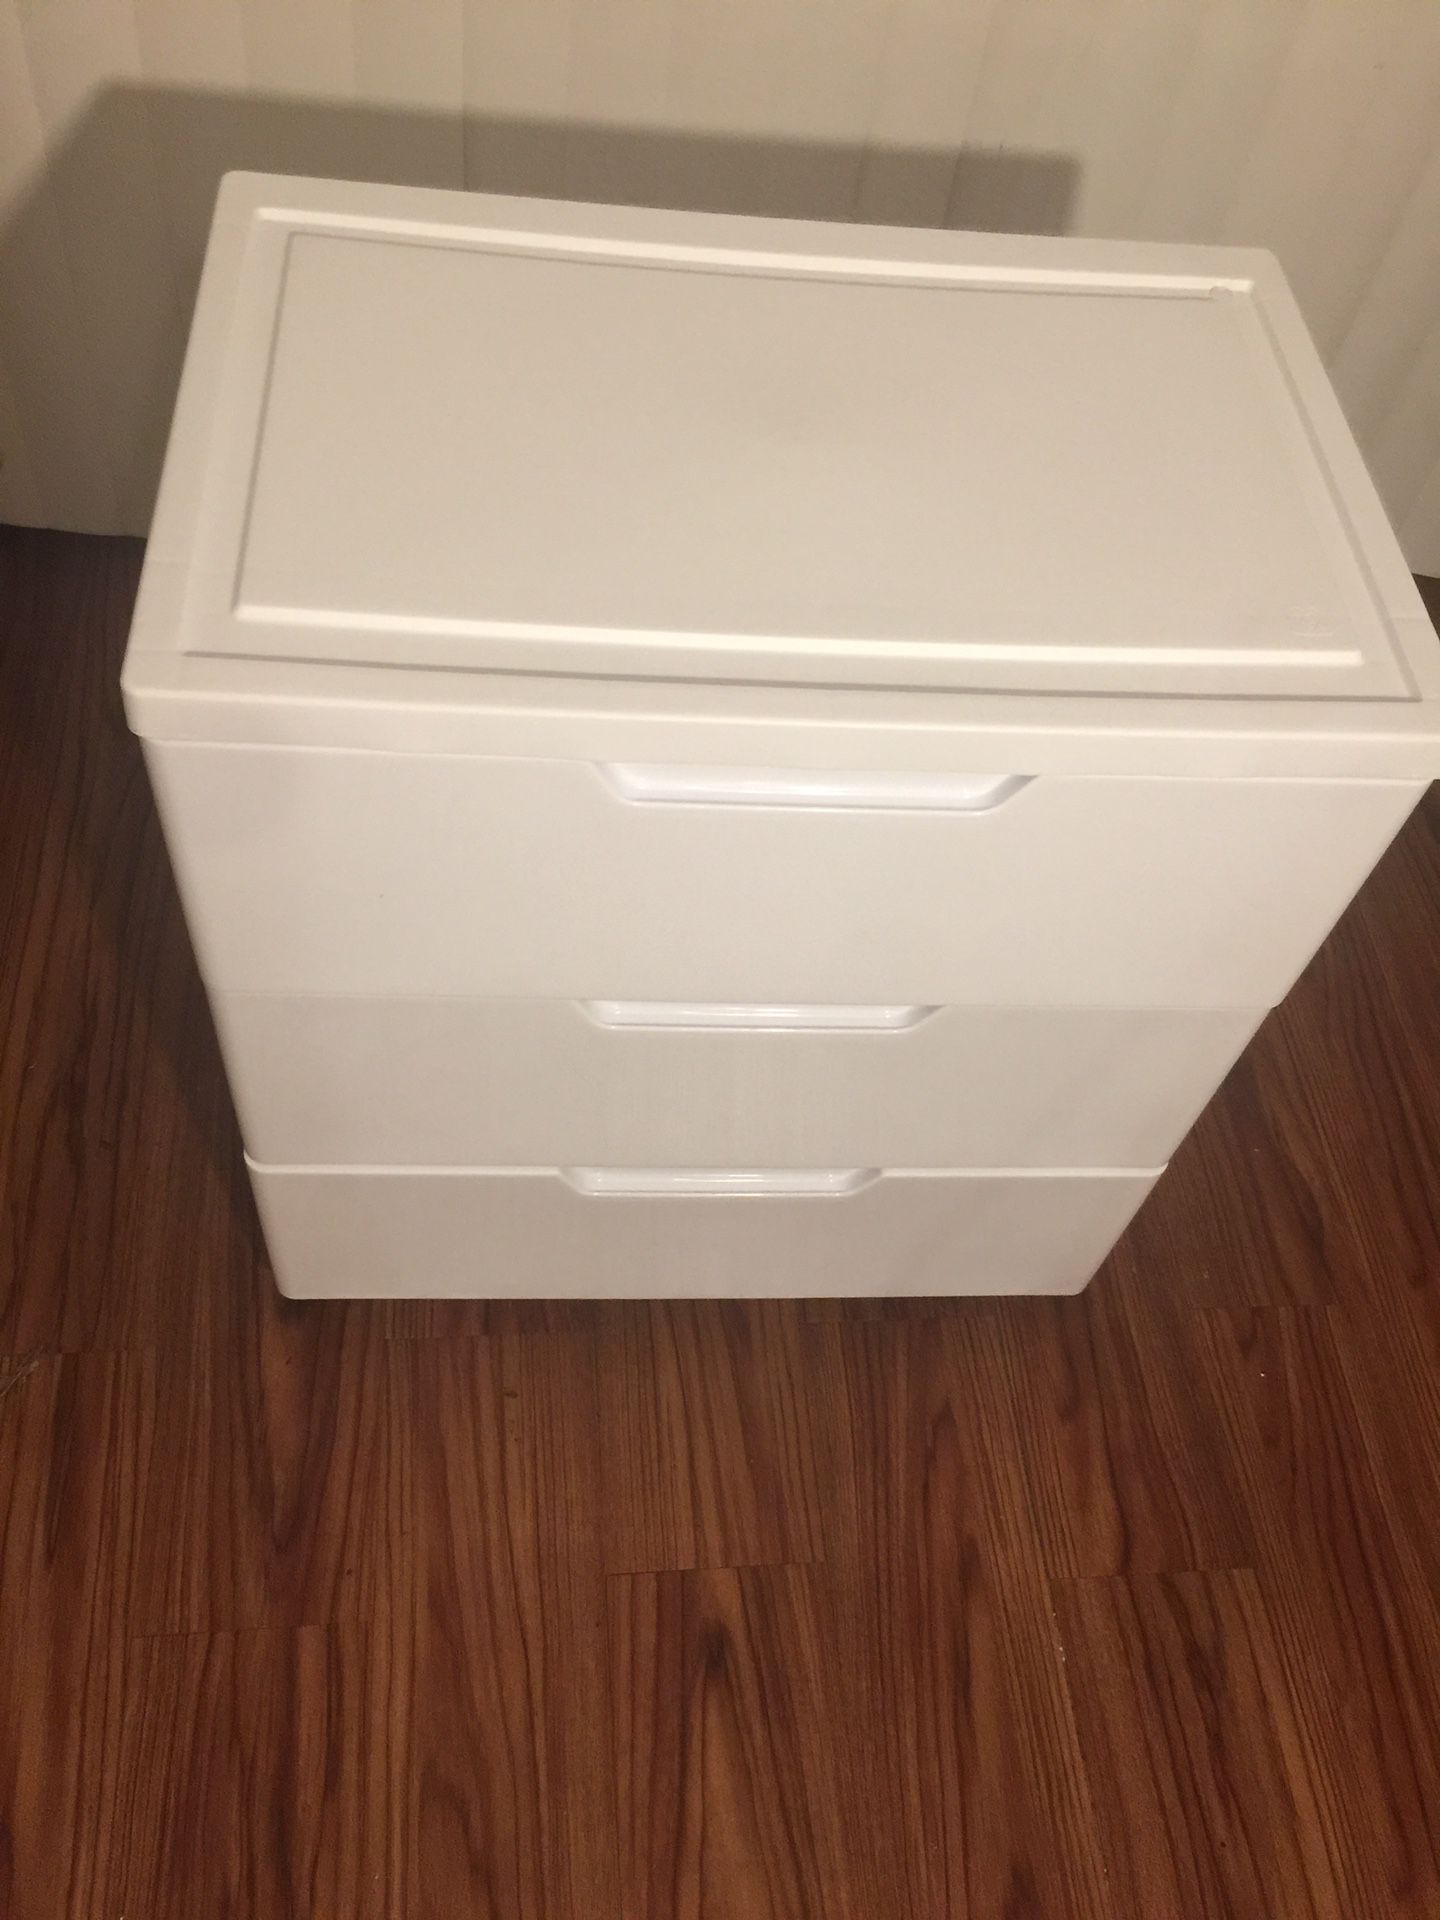 3 Drawer Storage w/ wheels( real drawer hardware